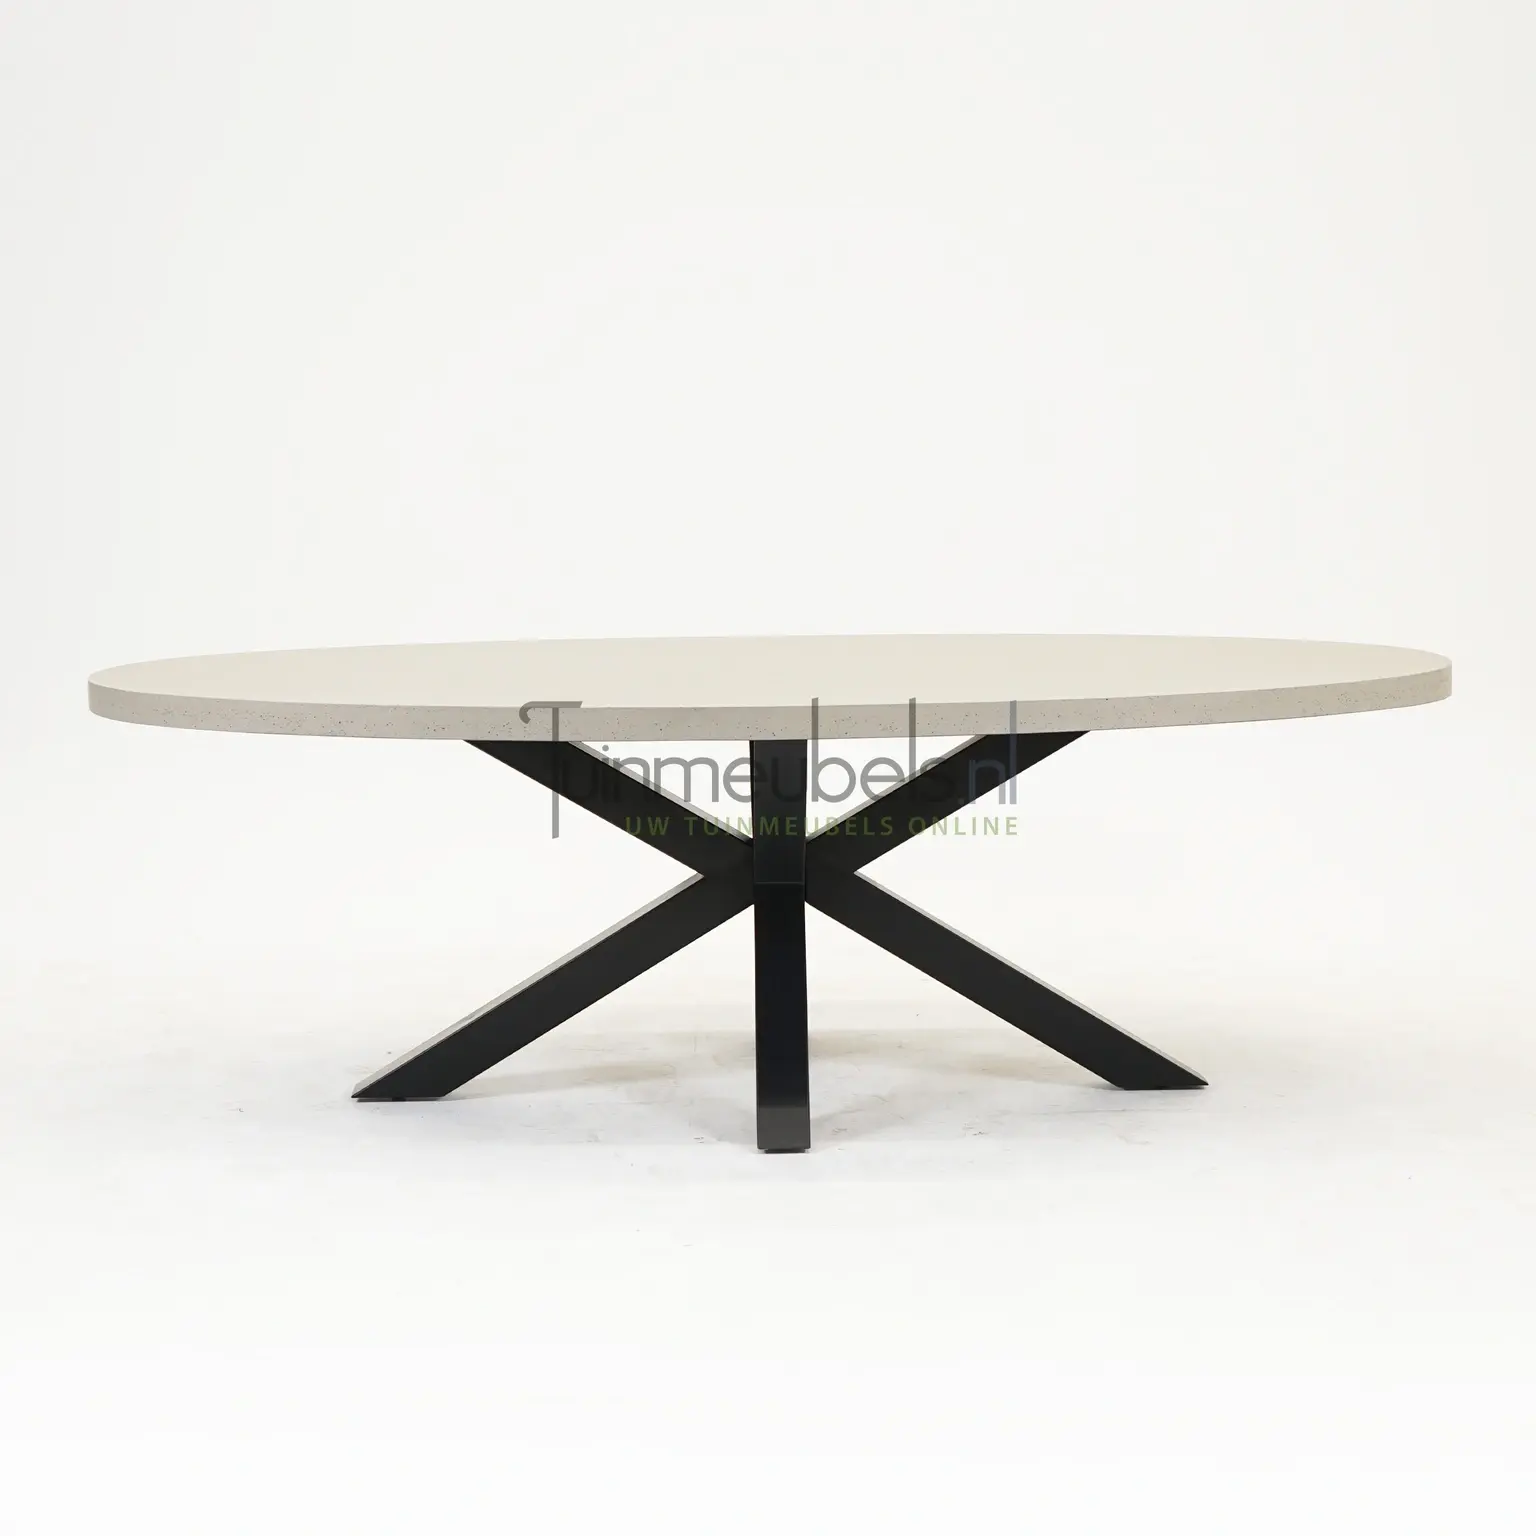 Brumby ovale tafel 240 x 115cm met metalen onderstel zwart Top Merken Winkel